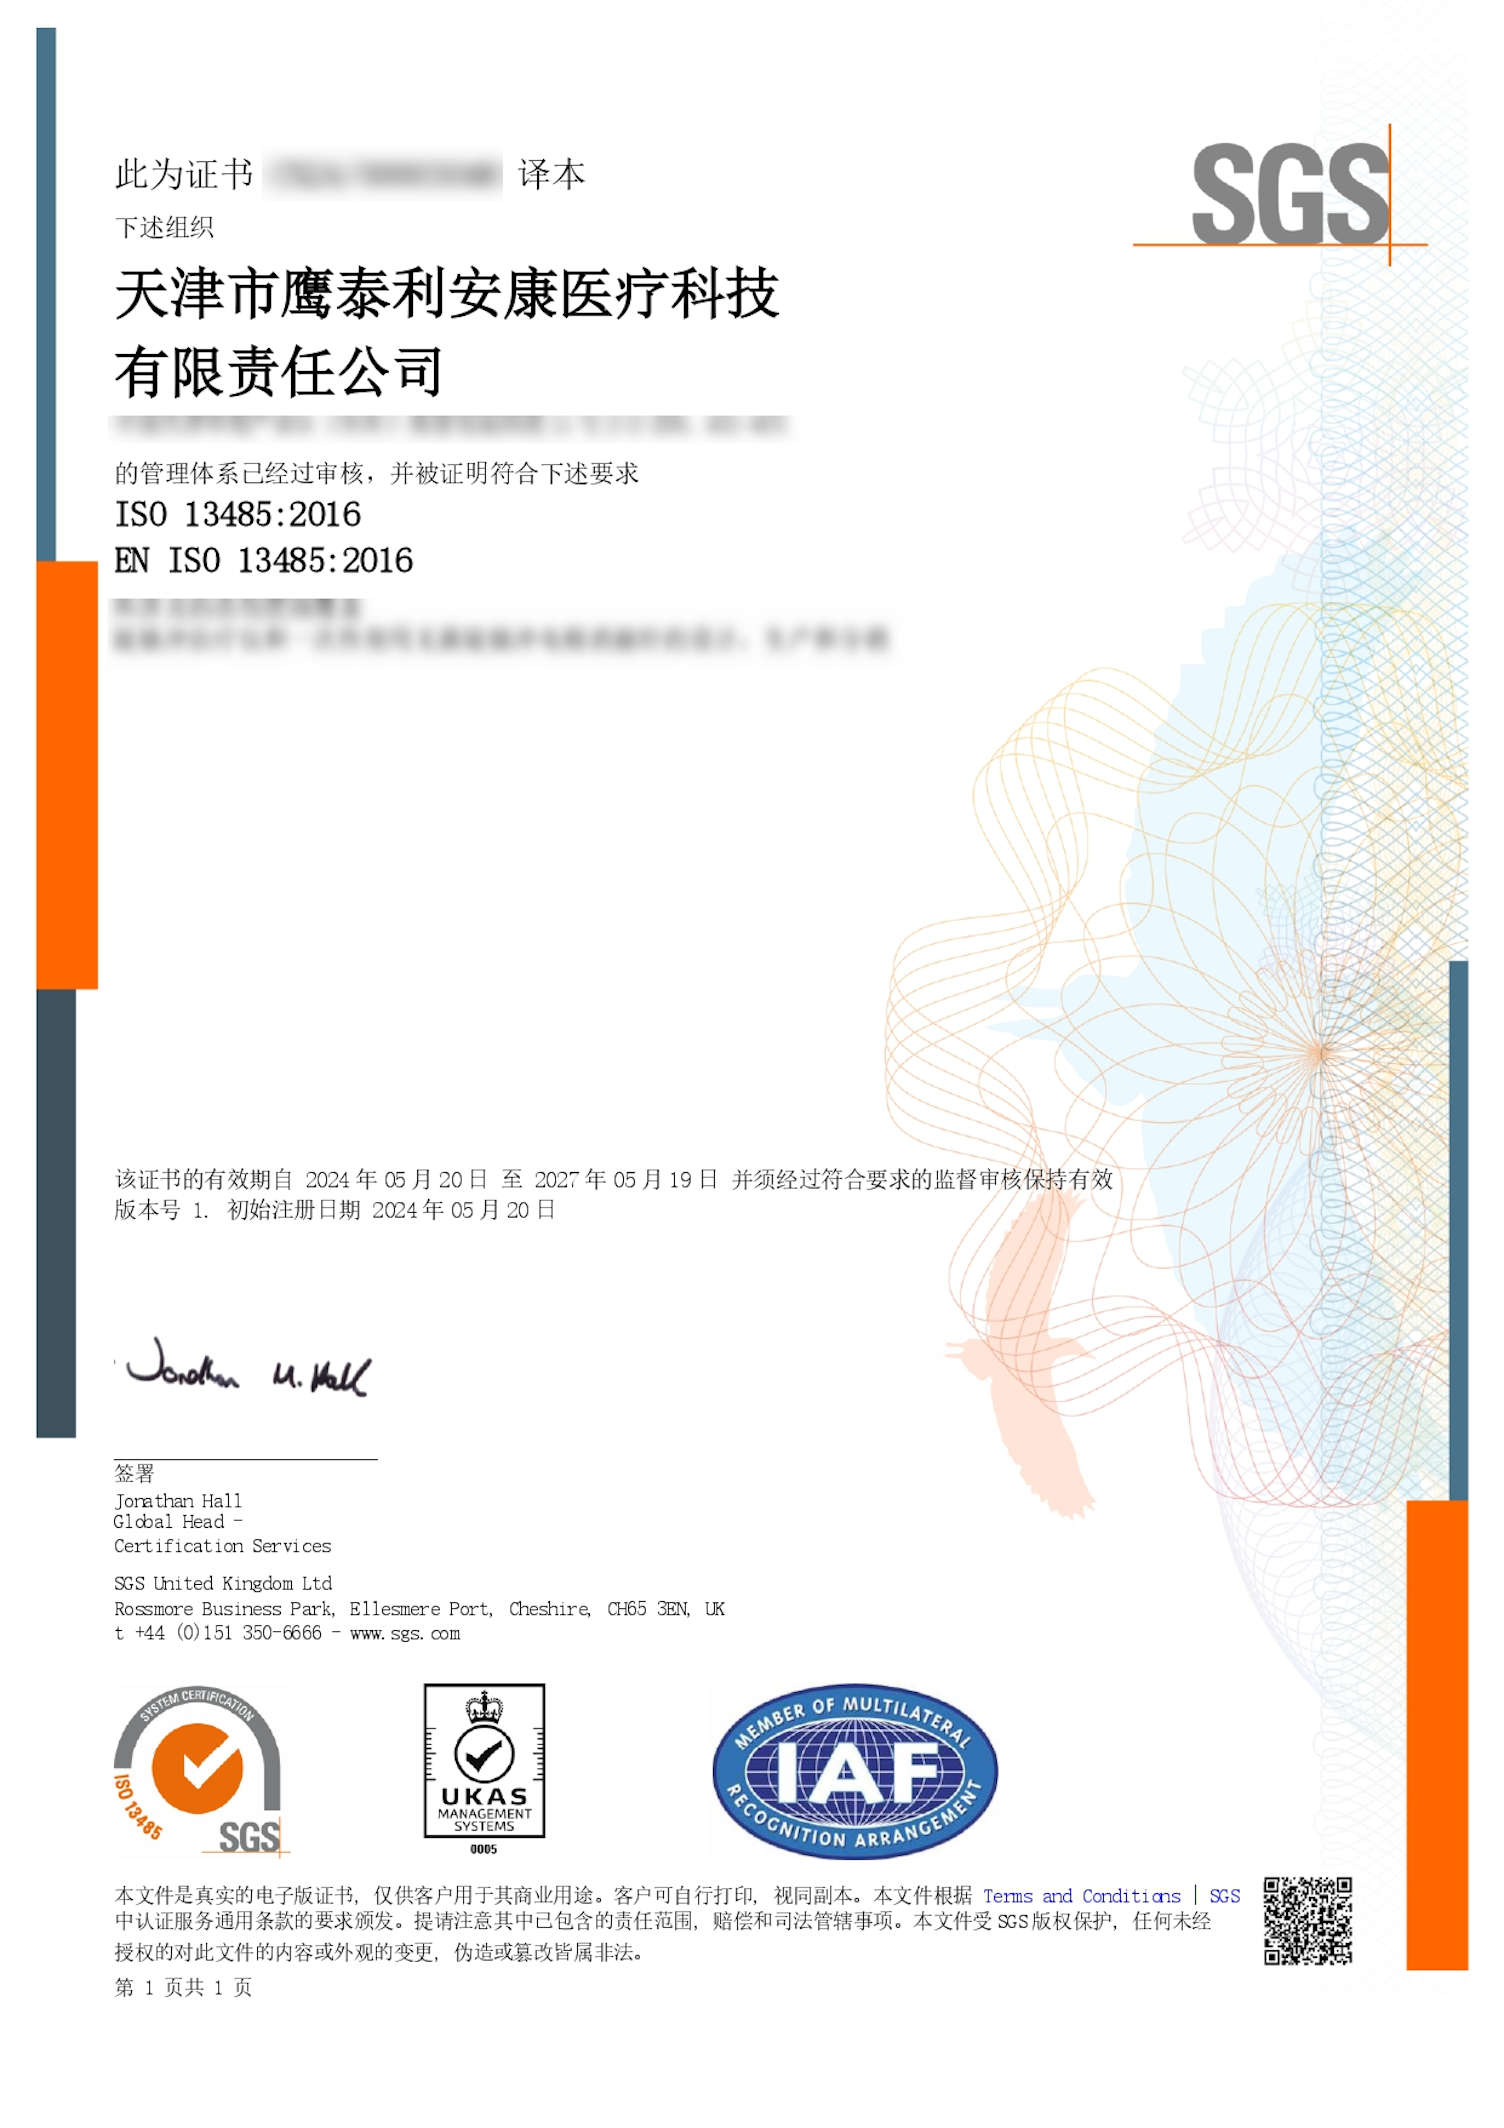 鹰泰利安康获SGS ISO 13485医疗器械质量管理体系认证